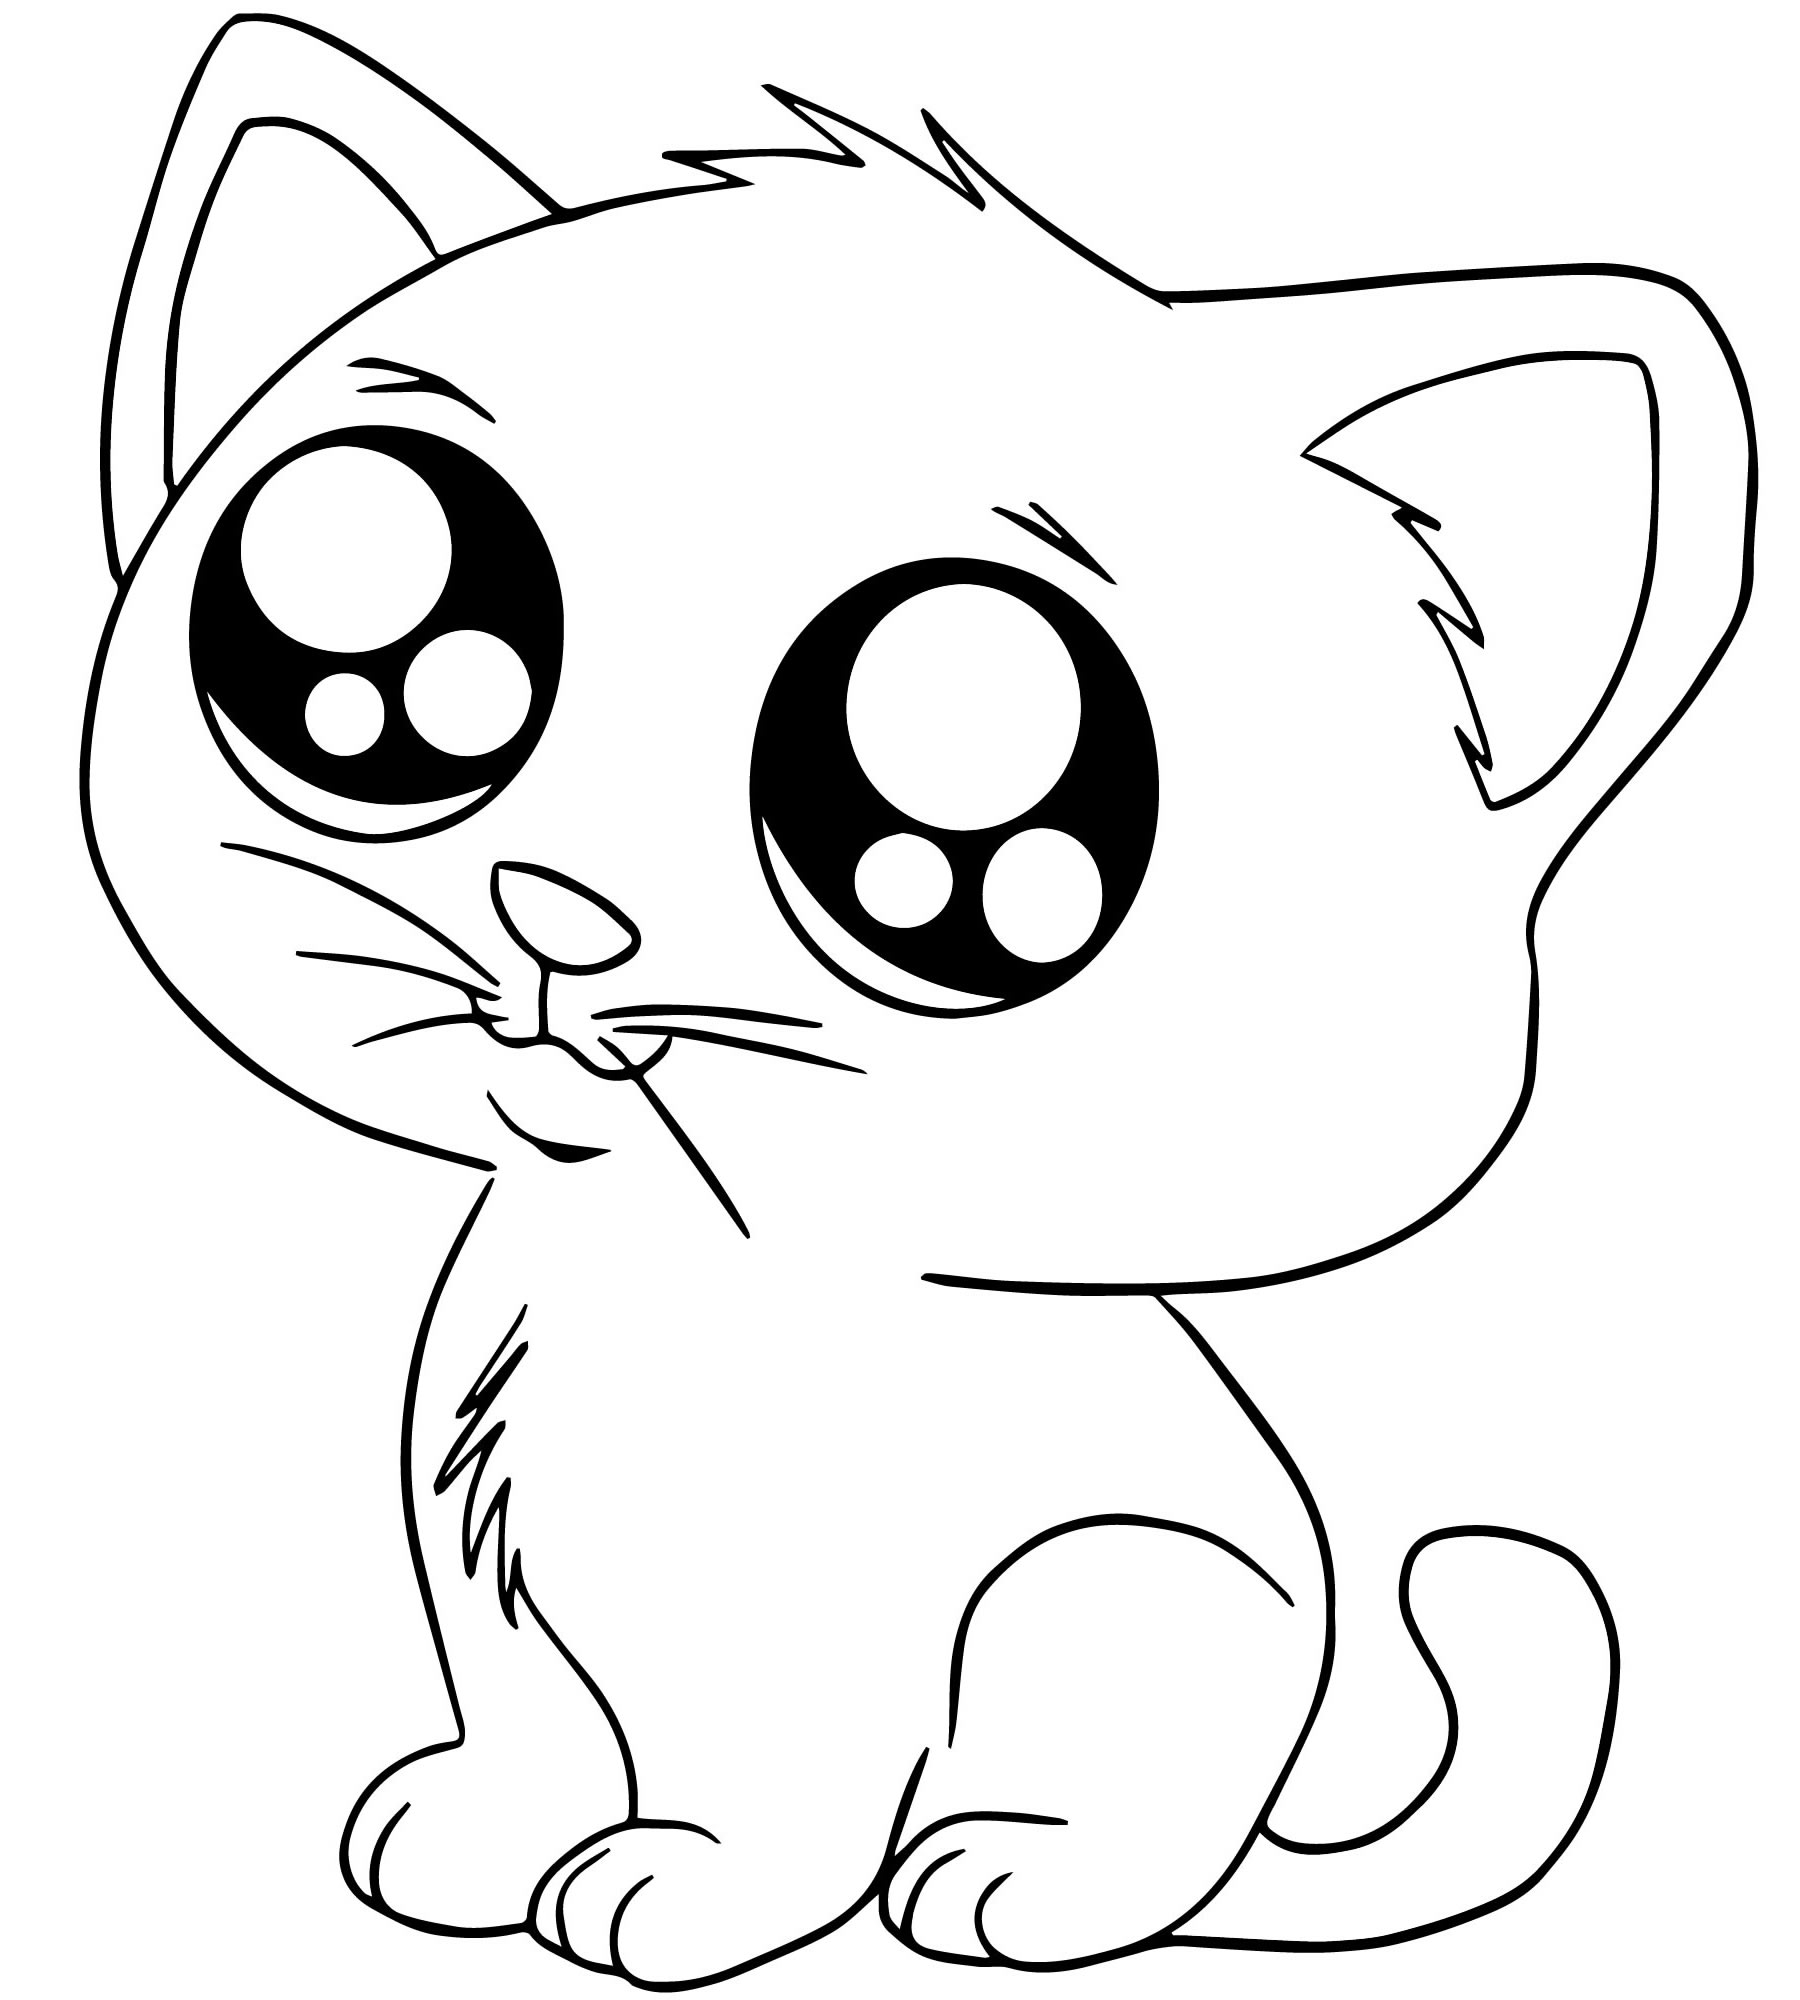 Напечатать милое. Раскраска. Котики. Рисунок кота для срисовки. Раскраска маленькие котята. Милые кошечки раскраска.